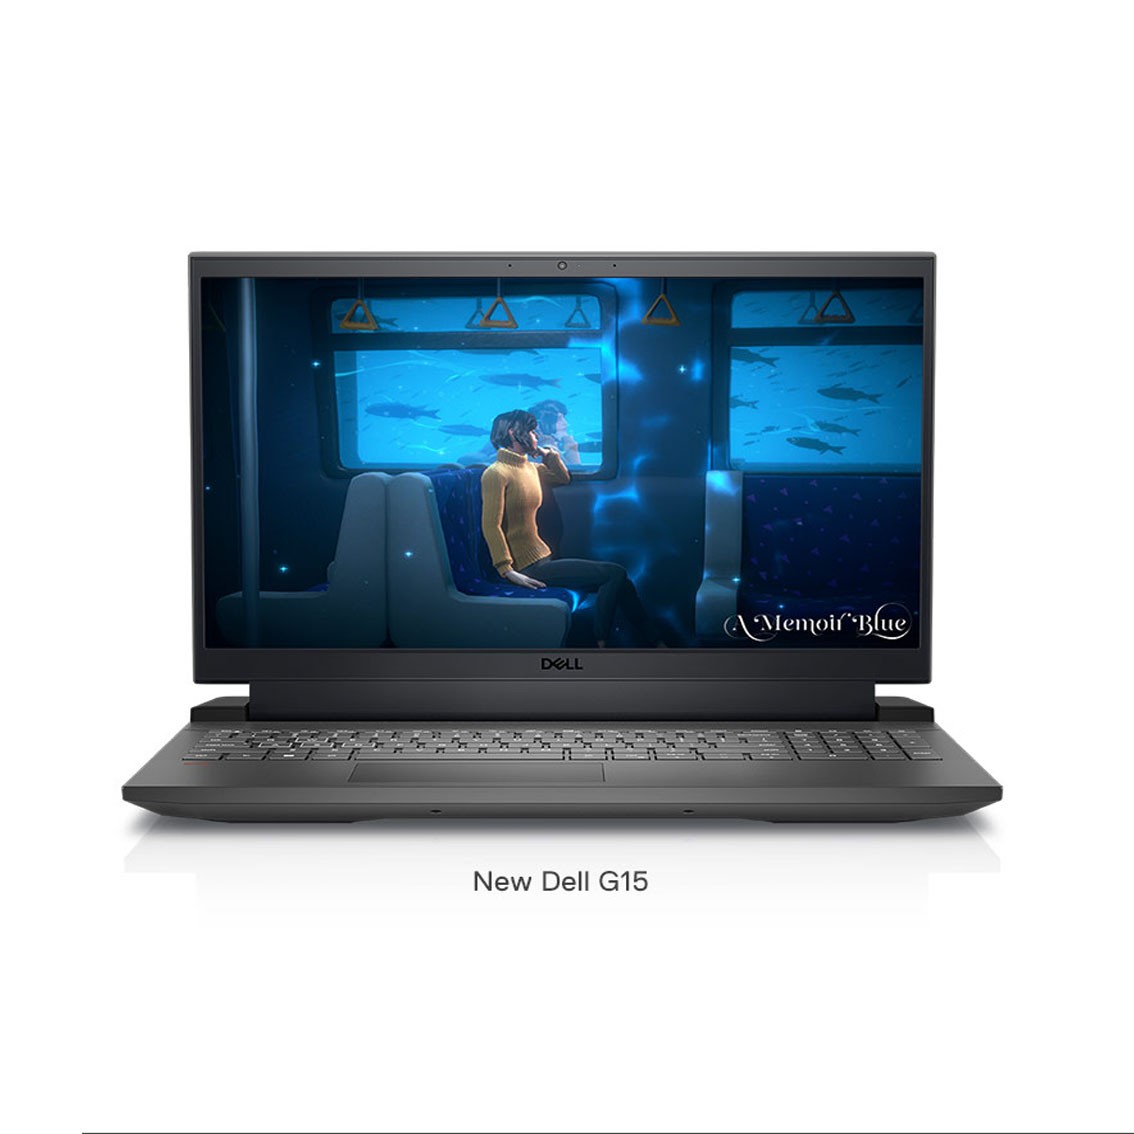 Dell Image